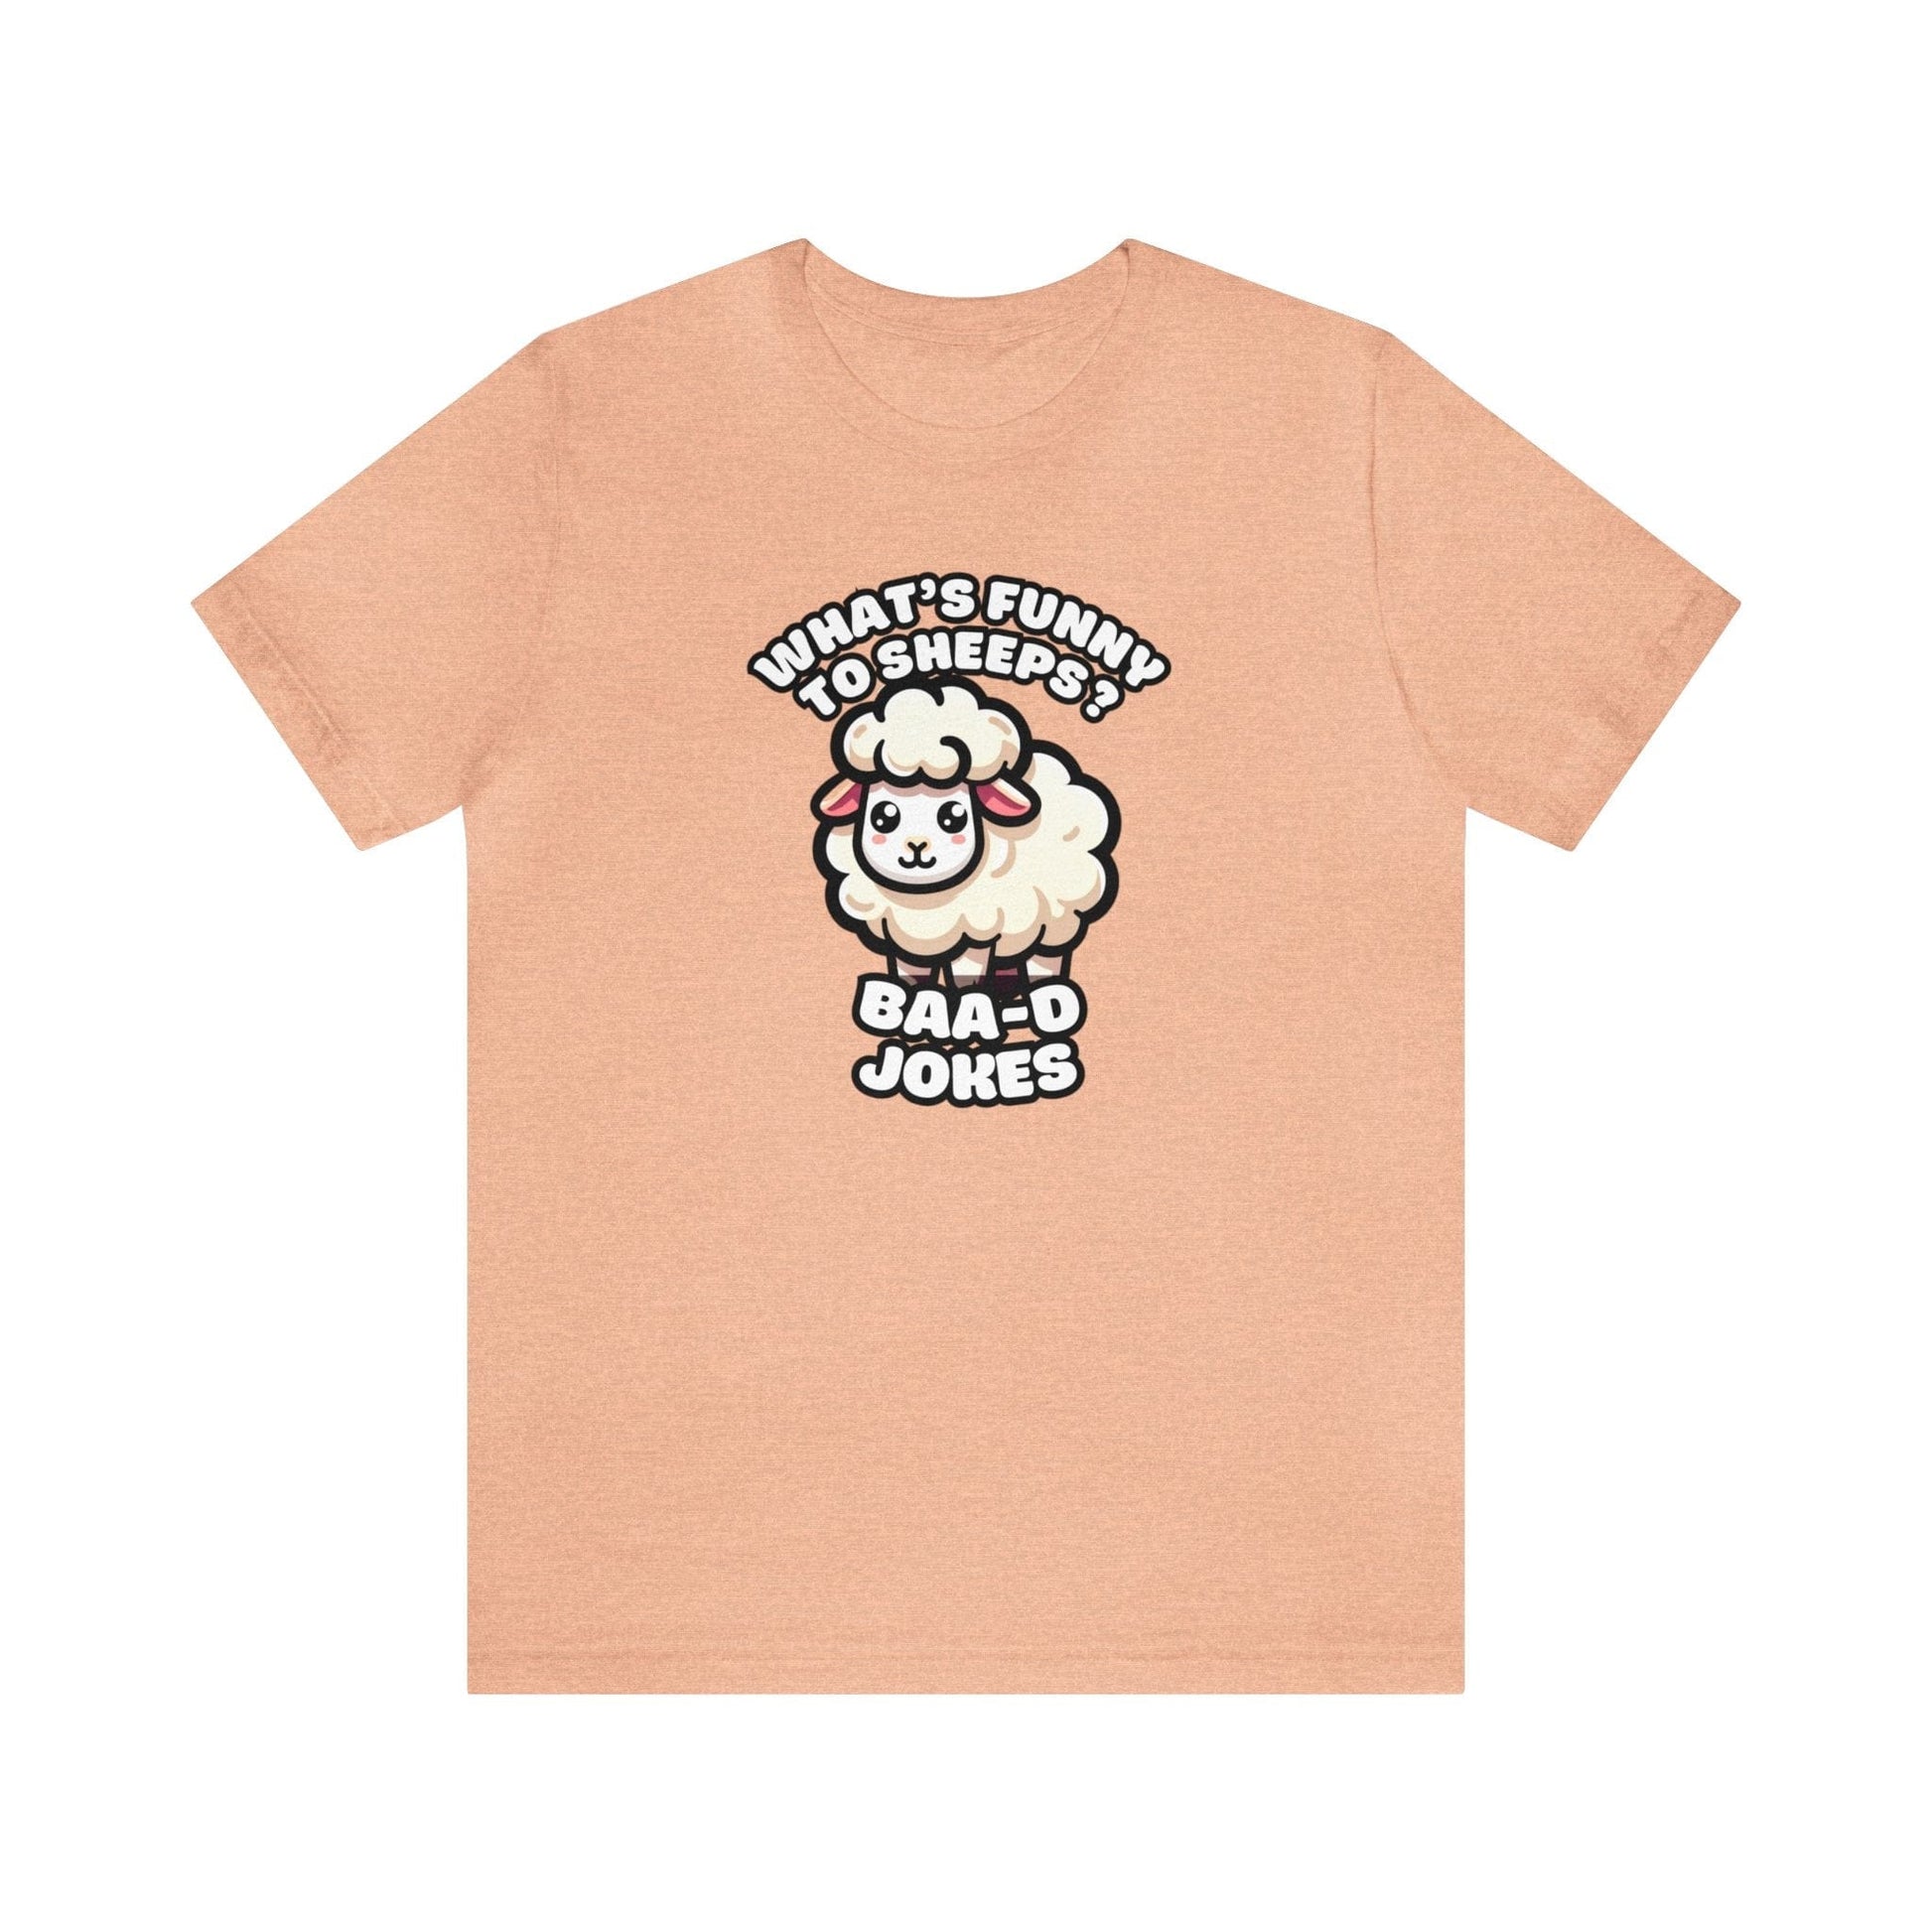 Baa-d Jokes - Sheep T-shirt Peach / S